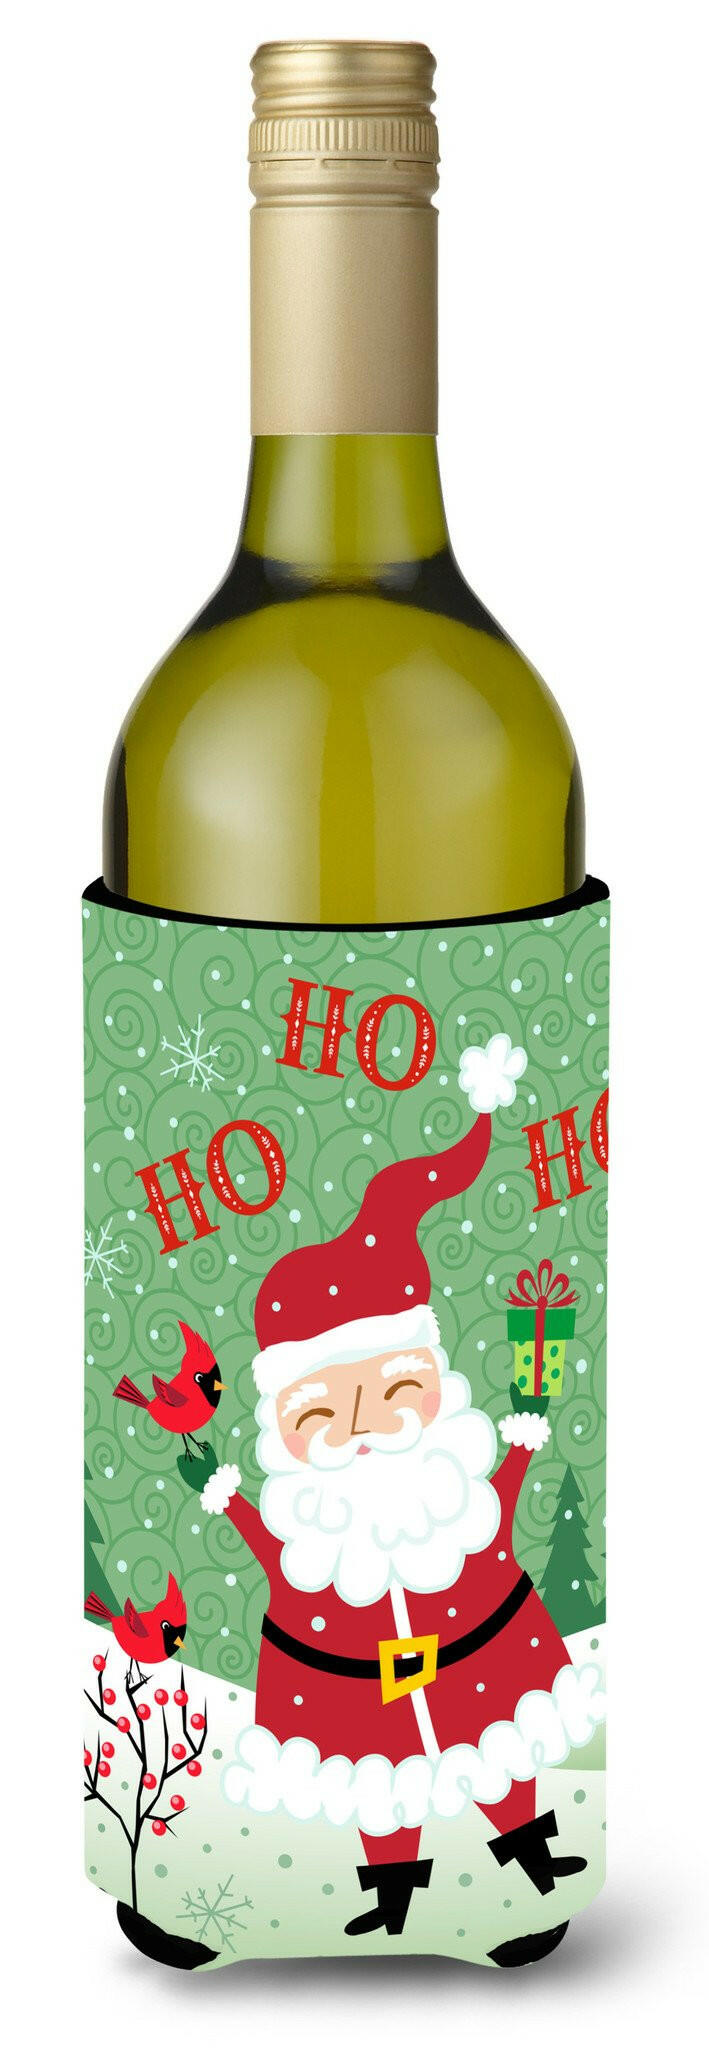 Merry Christmas Santa Claus Ho Ho Ho Wine Bottle Beverage Insulator Hugger VHA3016LITERK by Caroline's Treasures